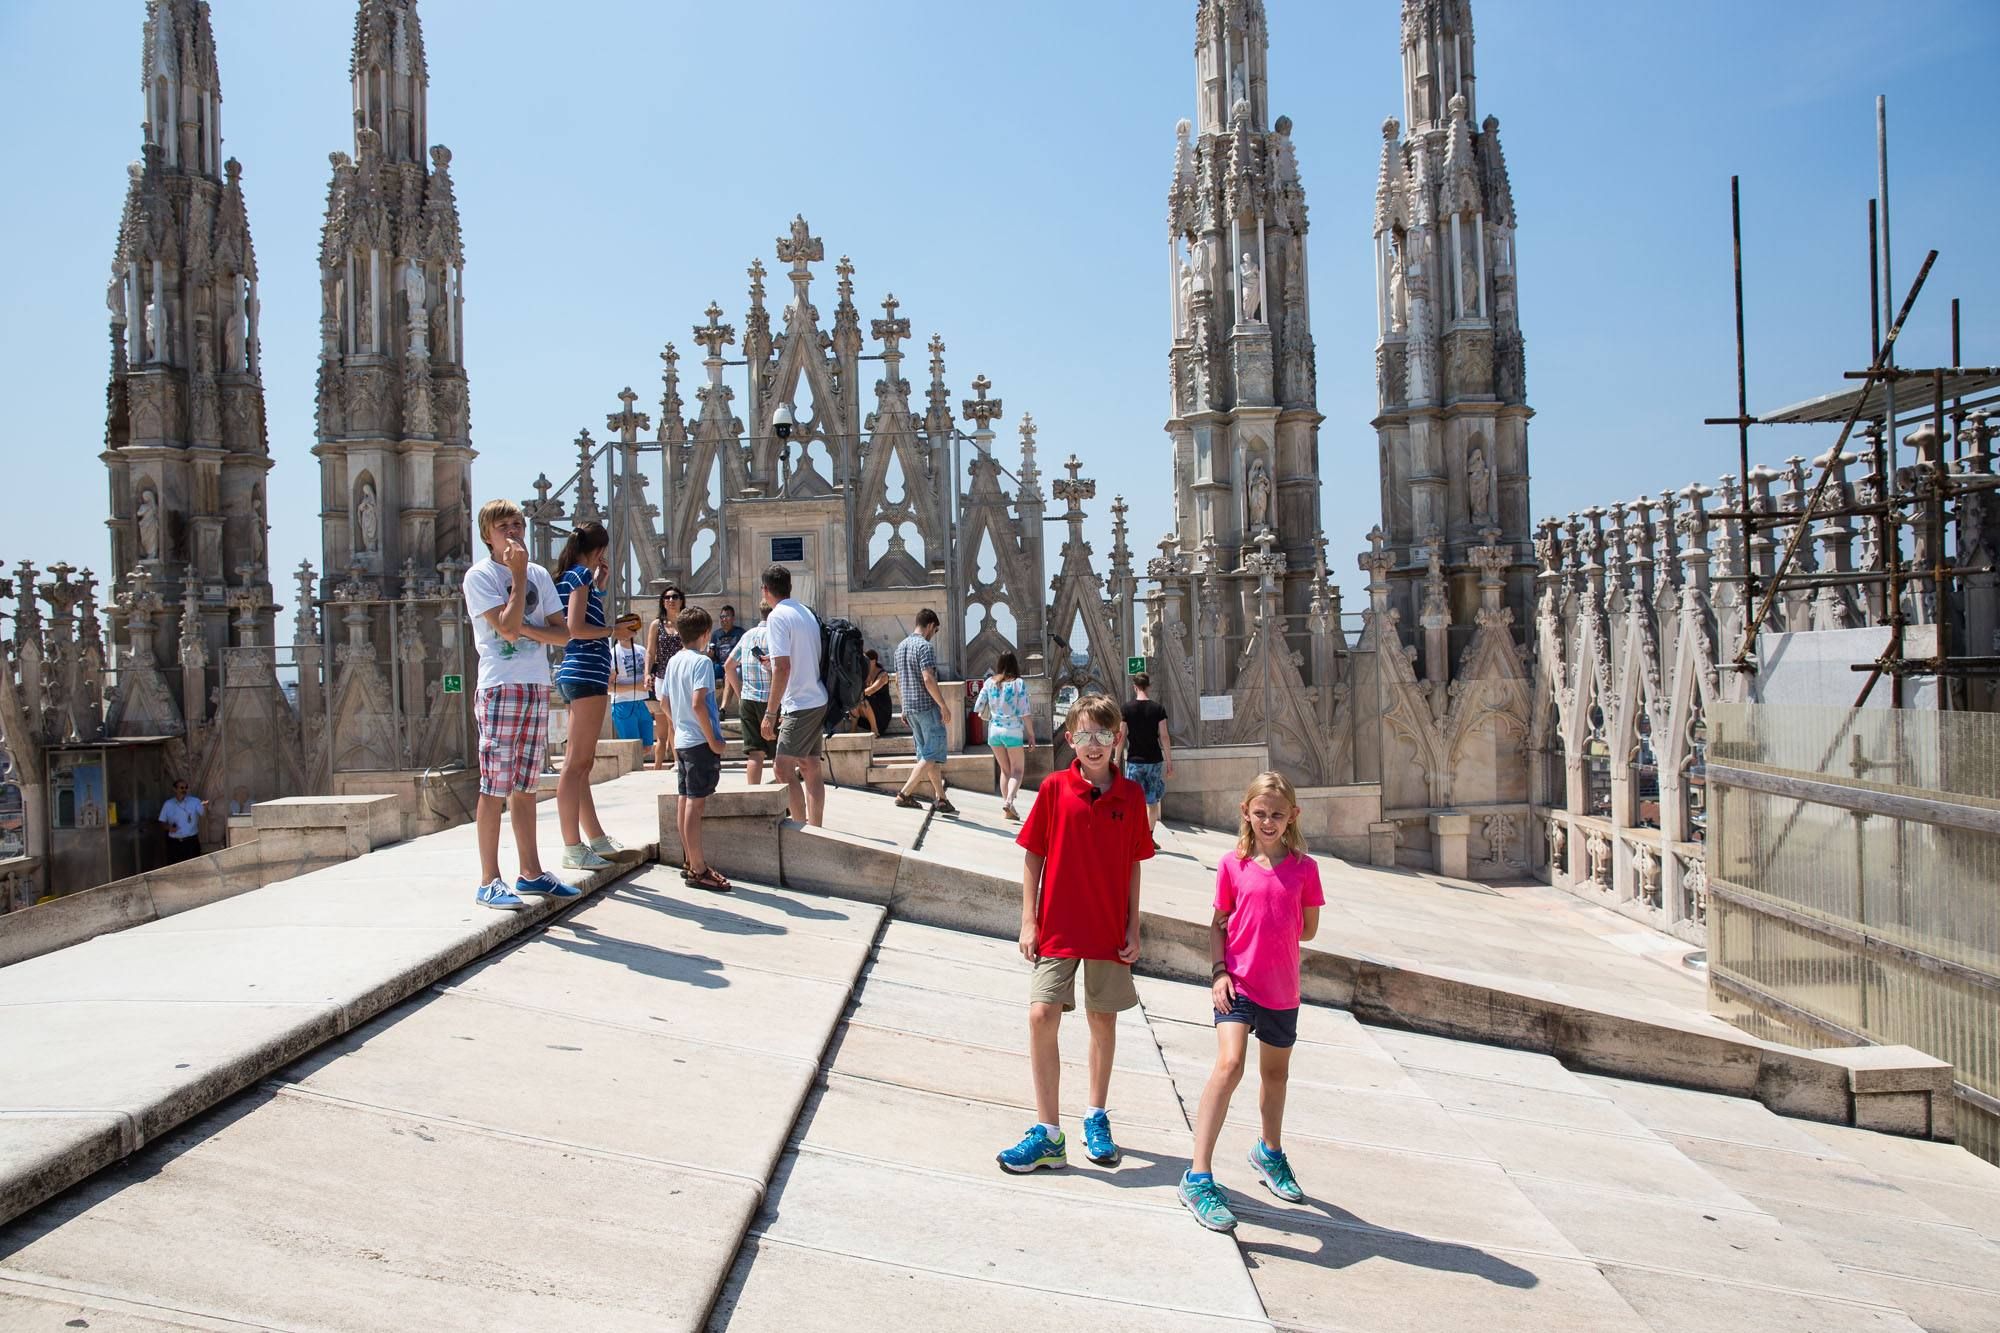 Duomo Rooftop day trip to Milan | Milan Day Trip